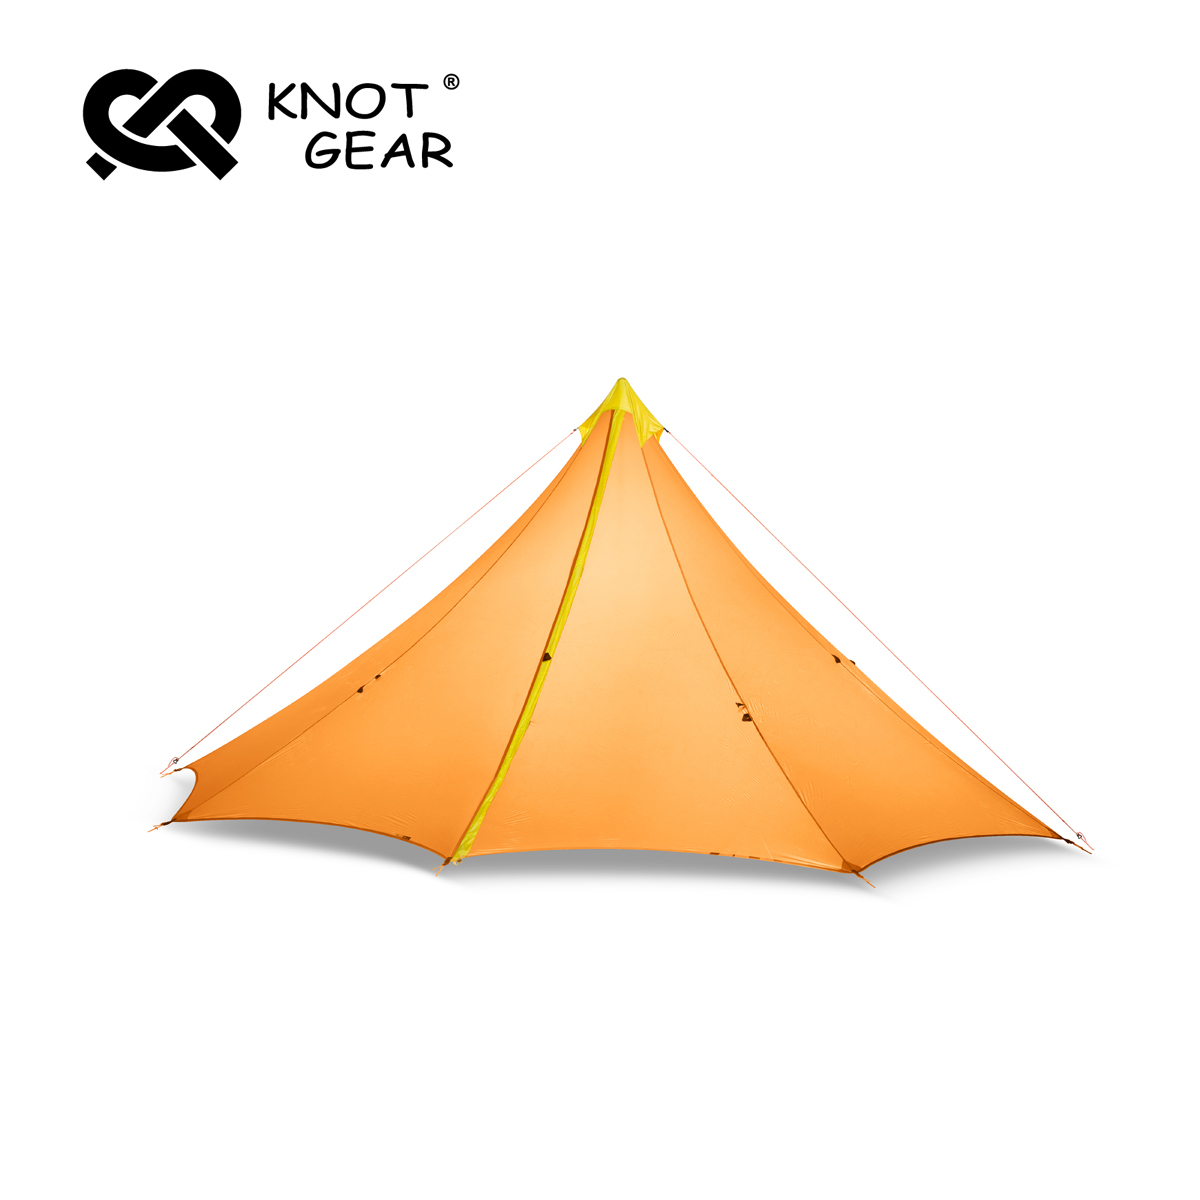 knot胡夫4—大号八边金字塔超轻便携四人天幕帐篷